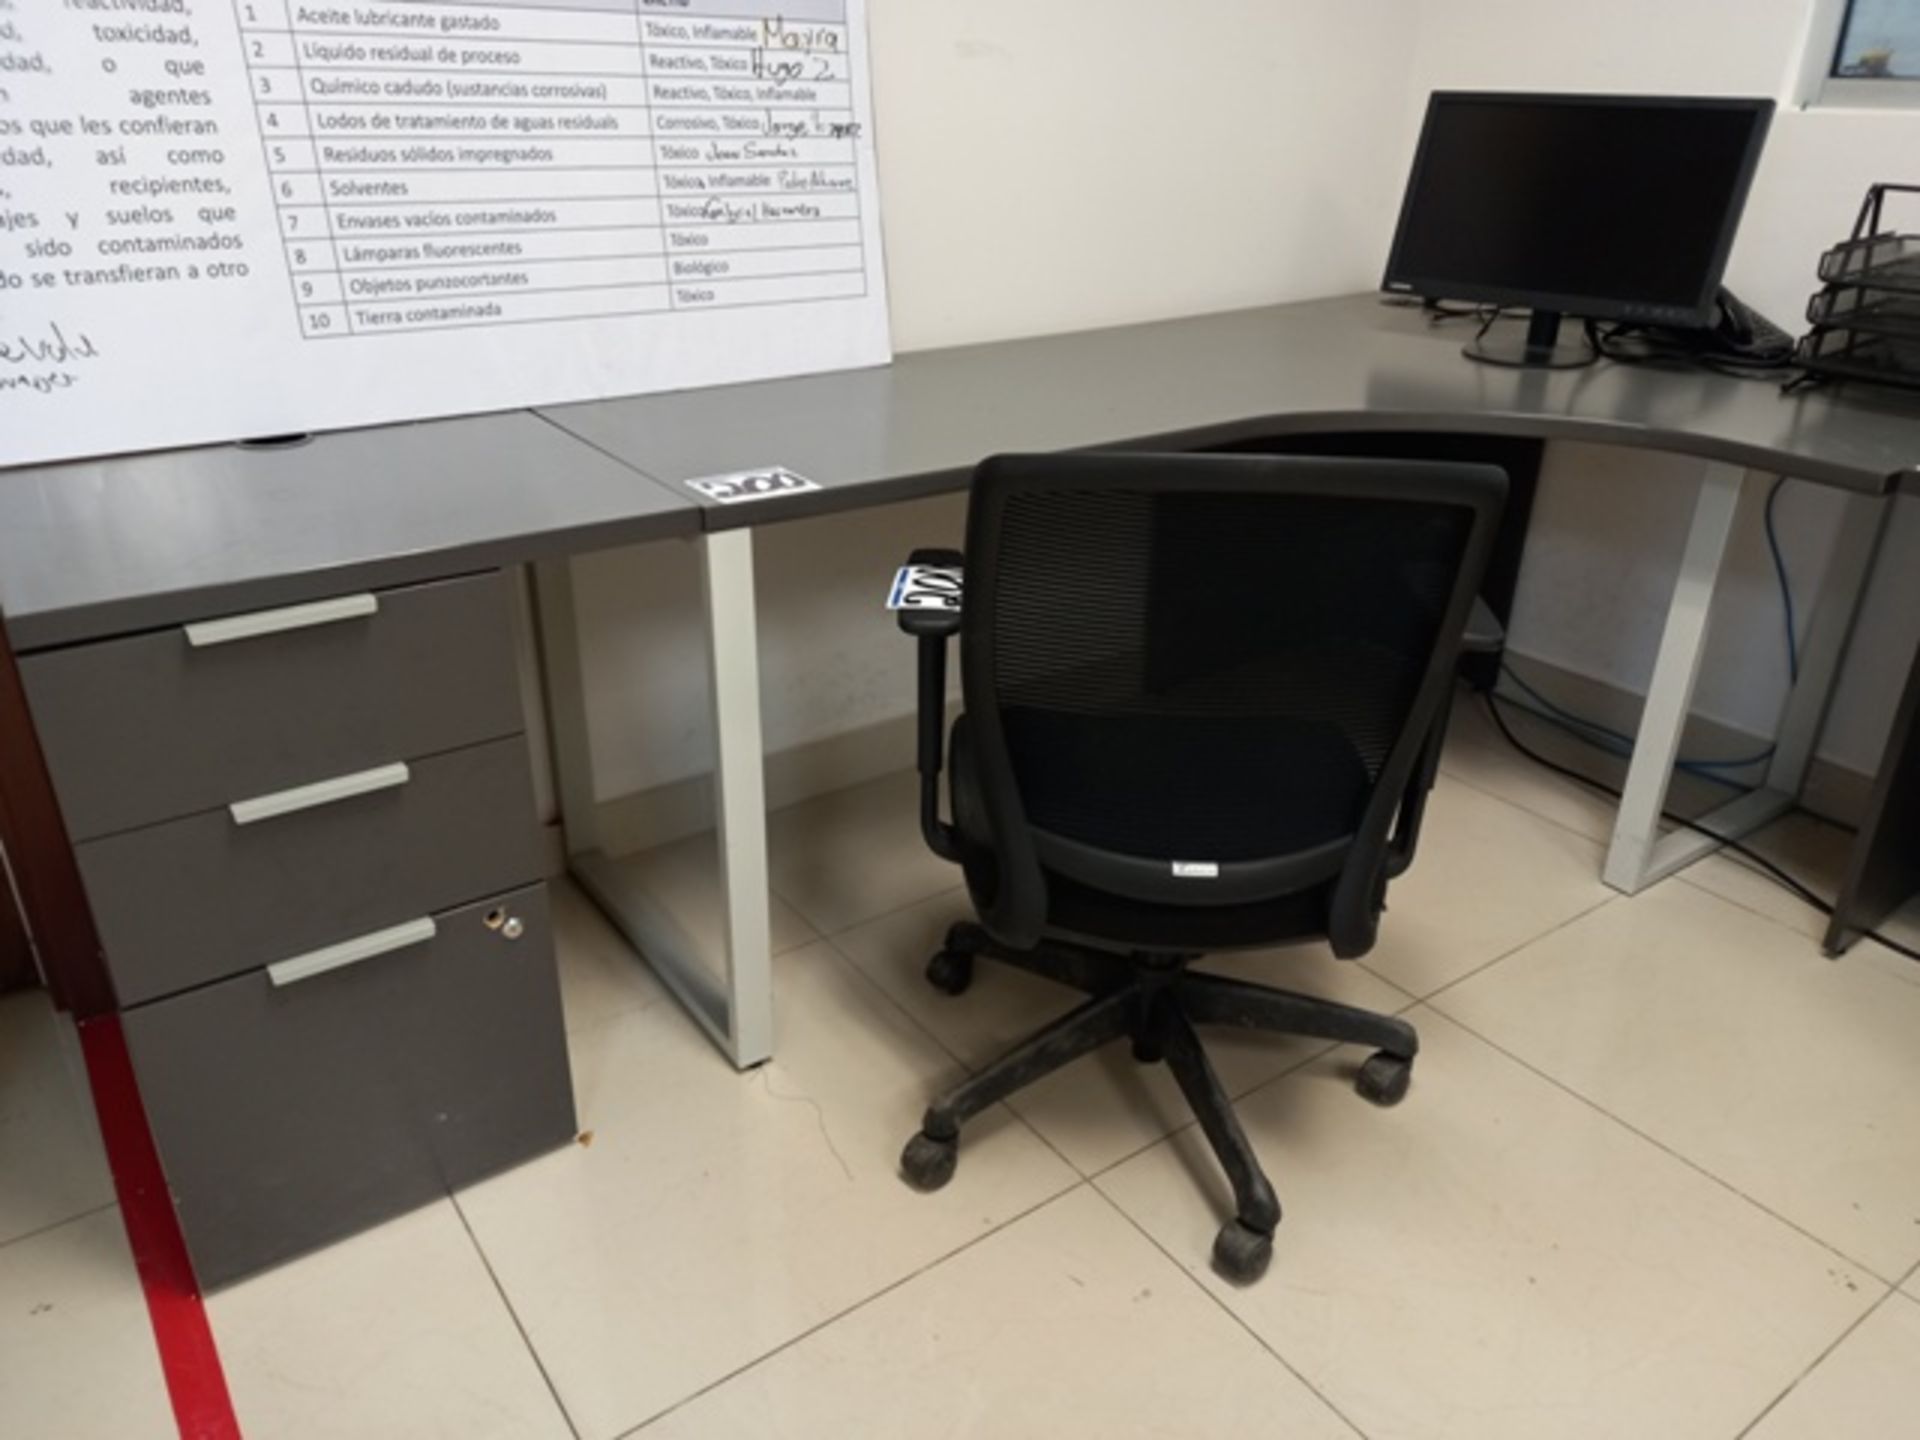 (44) Office Furniture Consisting Of: (1) 60 Inch Samsung TV, (6) L Desks, (6) Simple Desks & more - Image 9 of 25